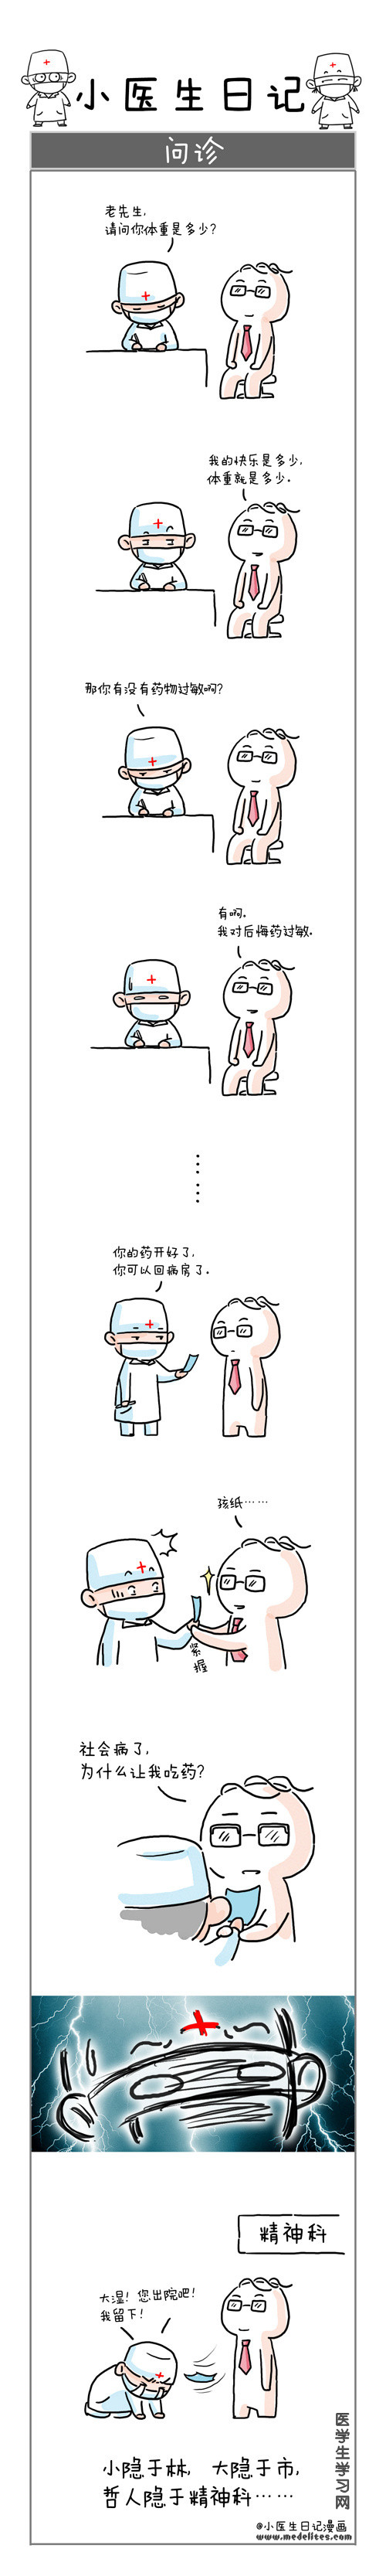 小医生日记漫画---问诊